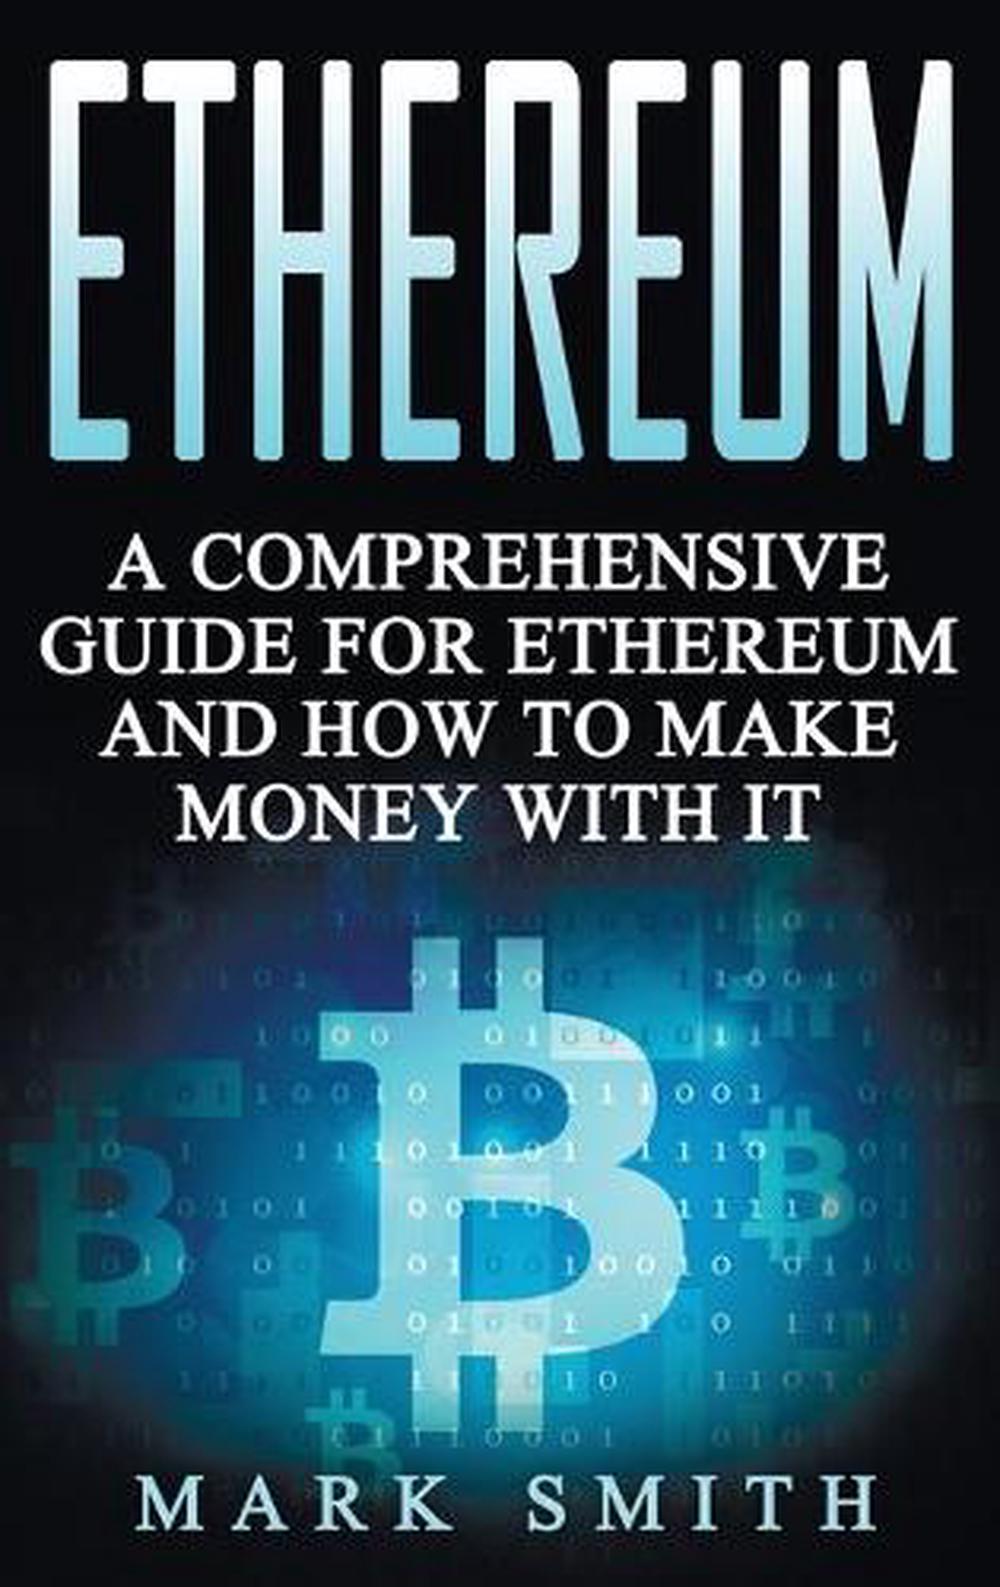 book value of ethereum